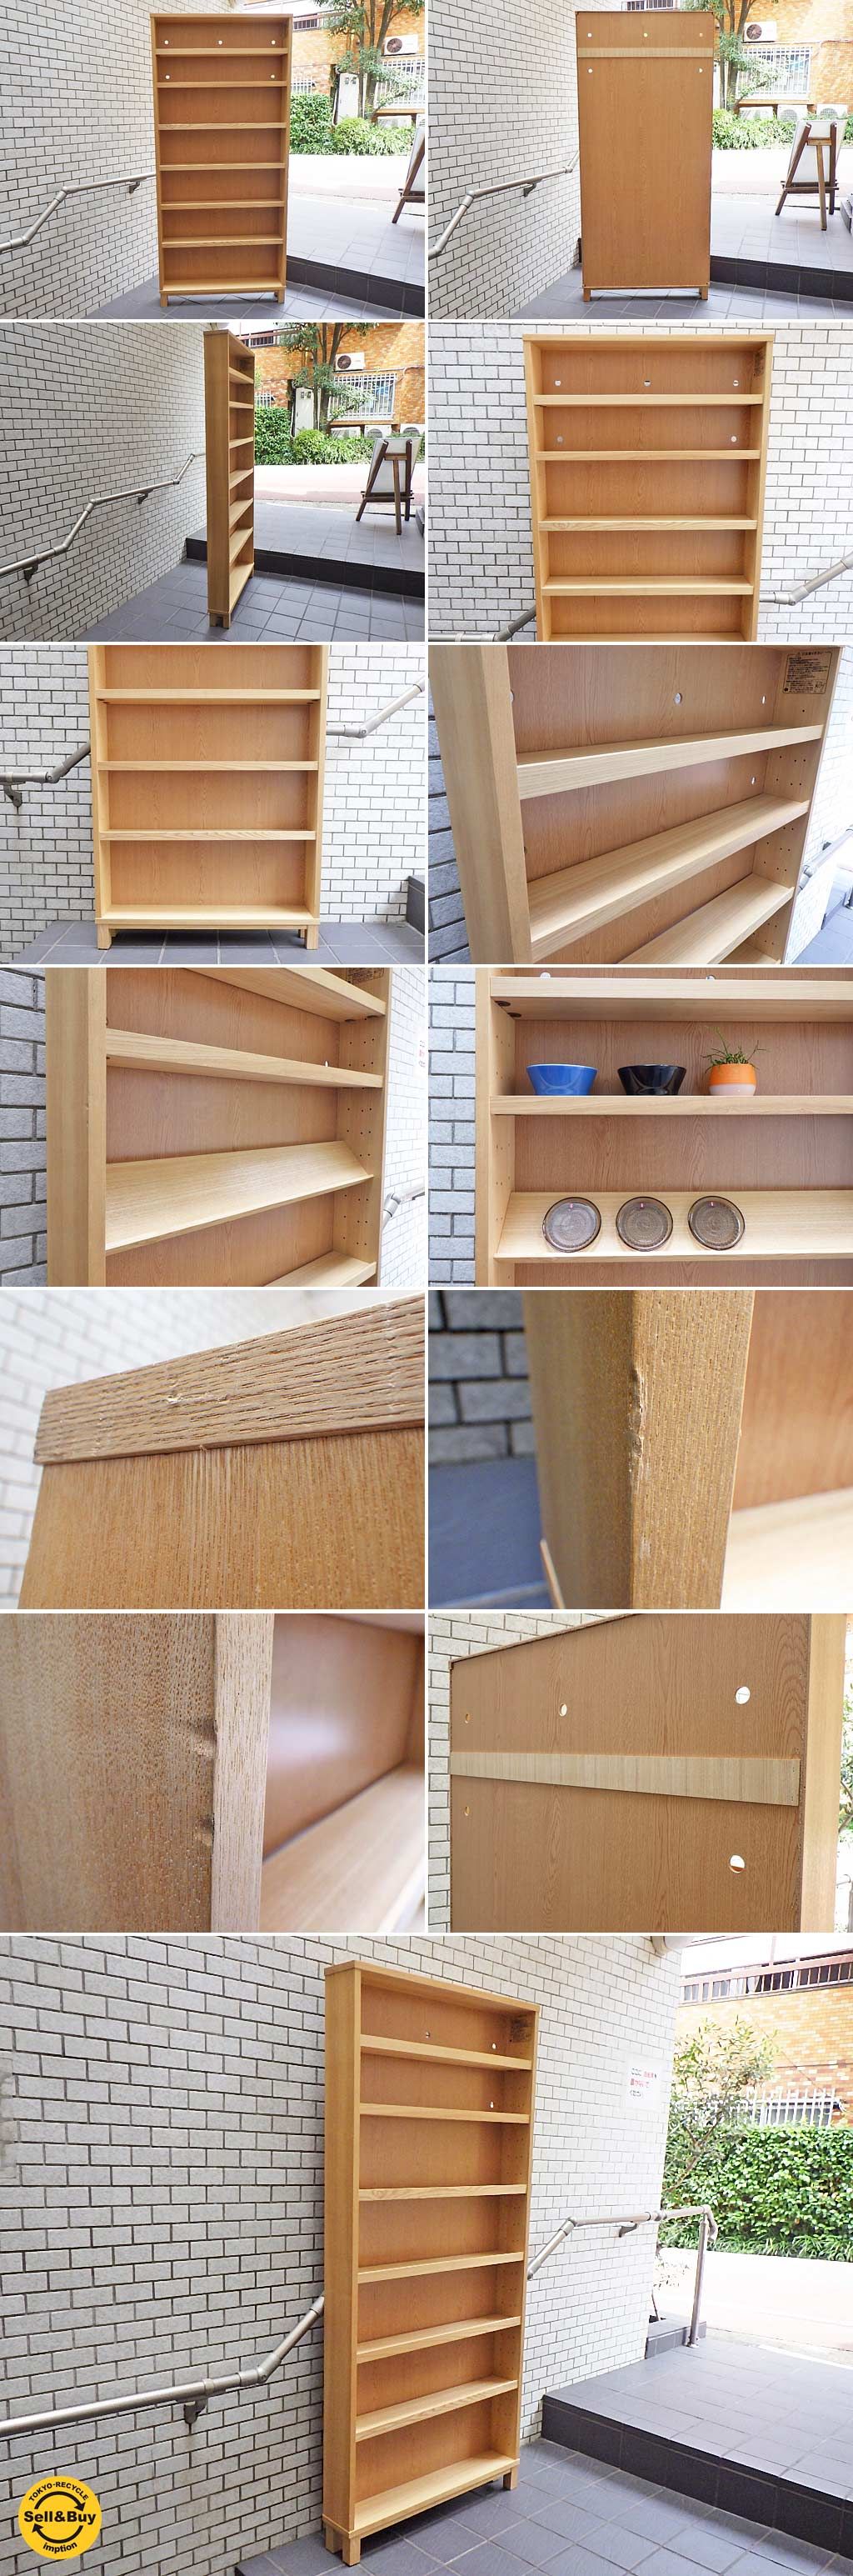 無印良品 MUJI 組み合わせて使える木製収納 本棚 シェルフ ミドル 